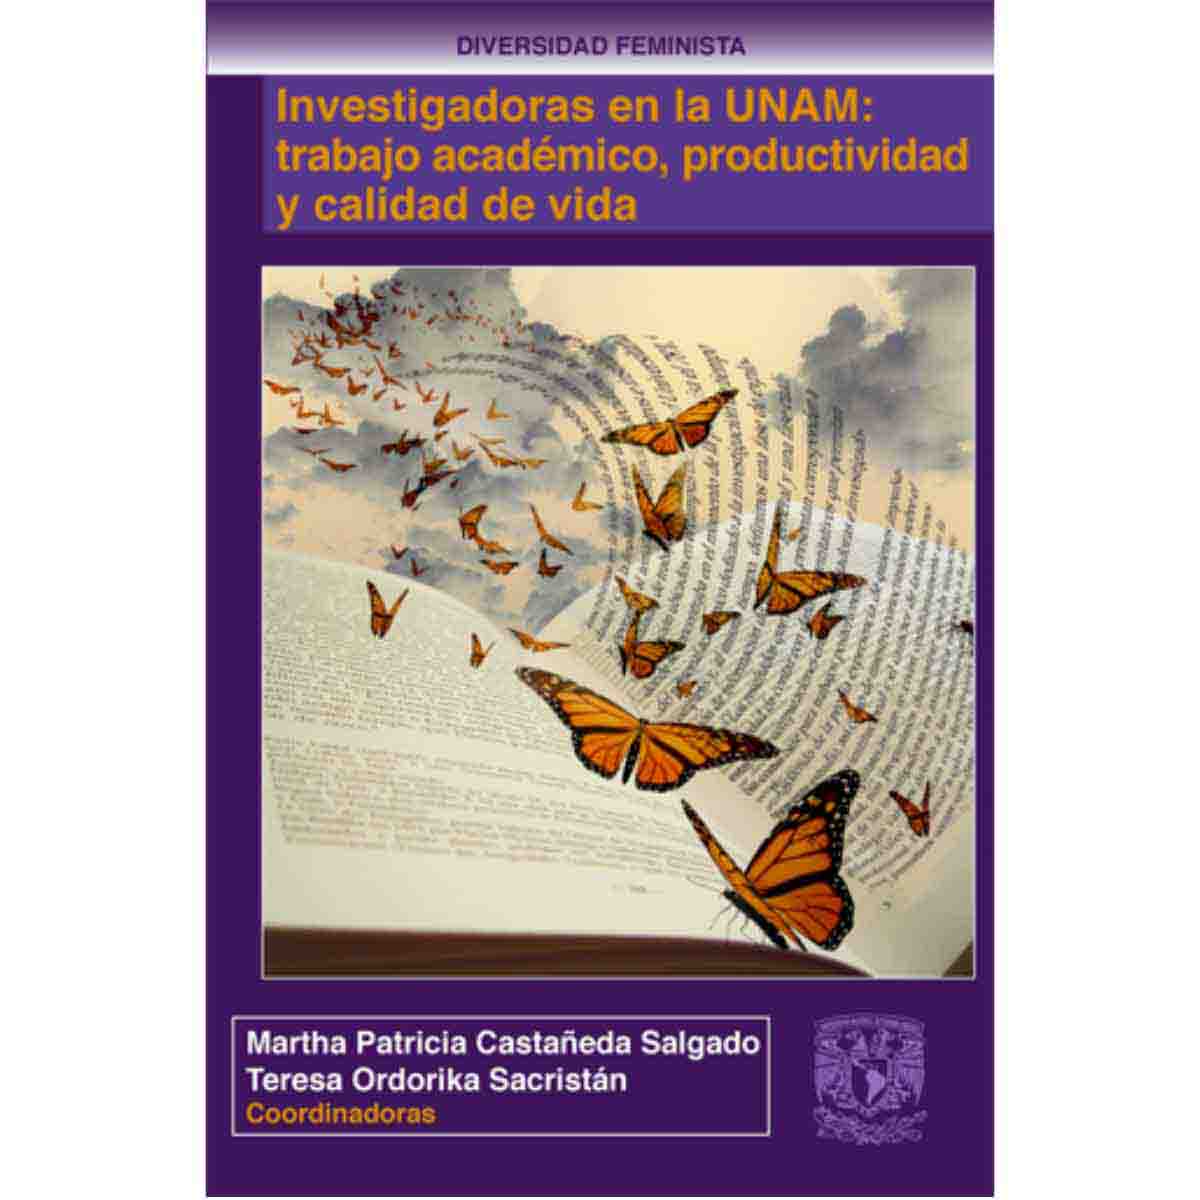 INVESTIGADORAS EN LA UNAM: TRABAJO ACADÉMICO, PRODUCTIVIDAD Y CALIDAD DE VIDA